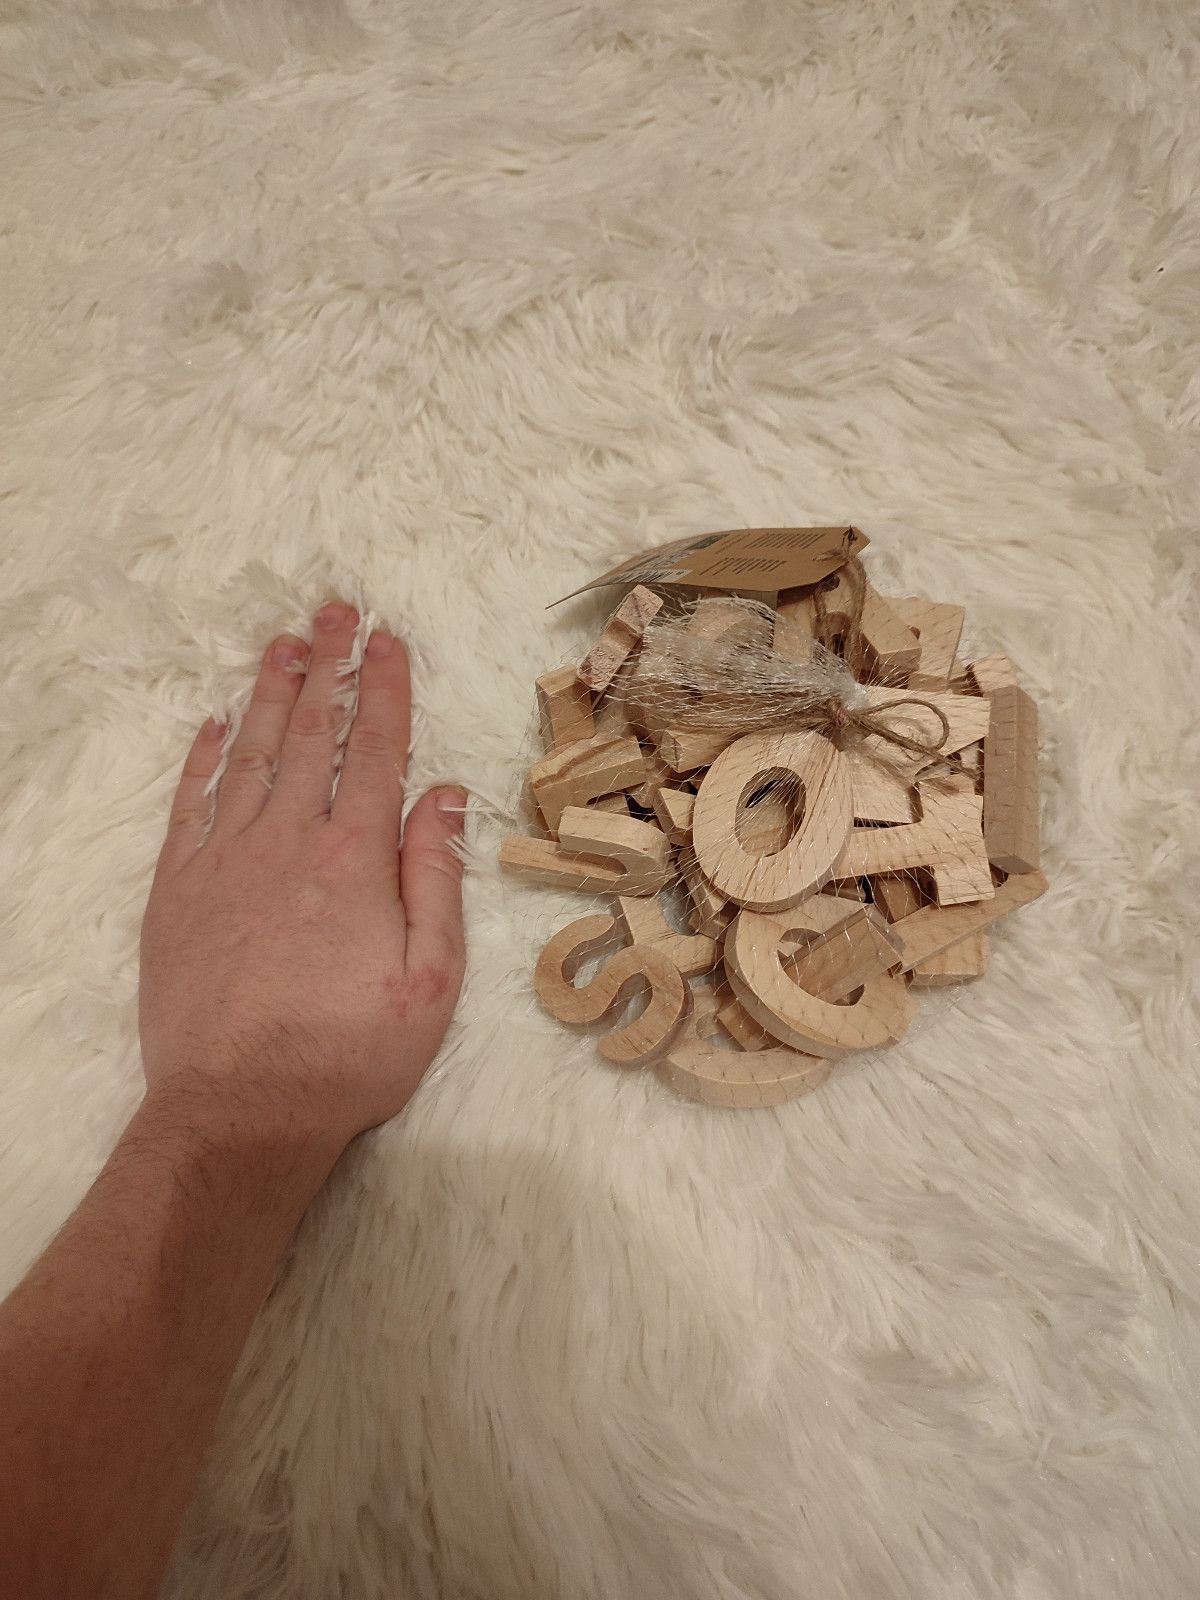 Nowy zestaw drewnianych liter dla dziecka